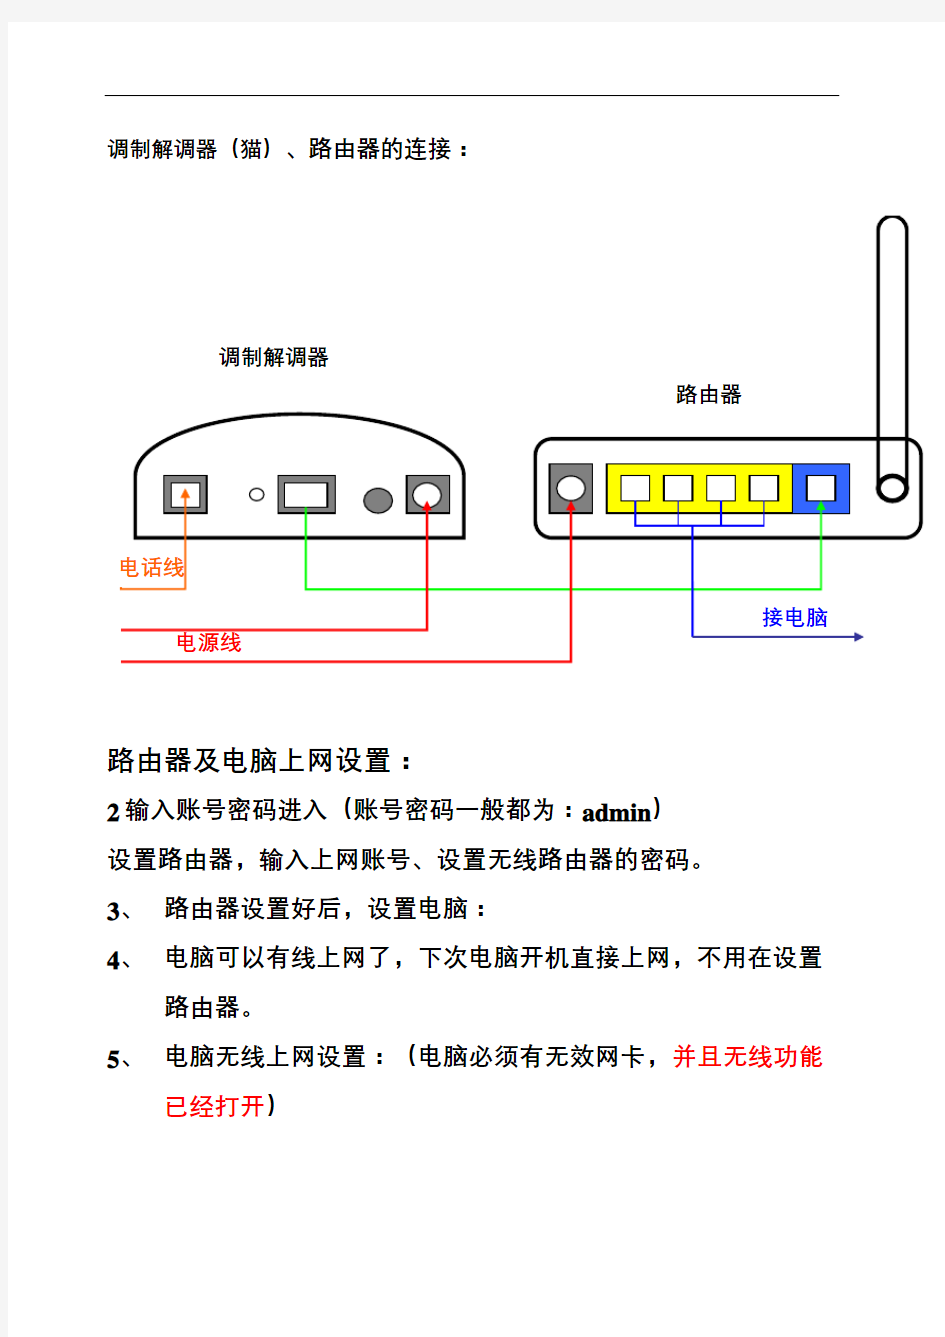 无线路由器上网设置及网络连接方法详细图解